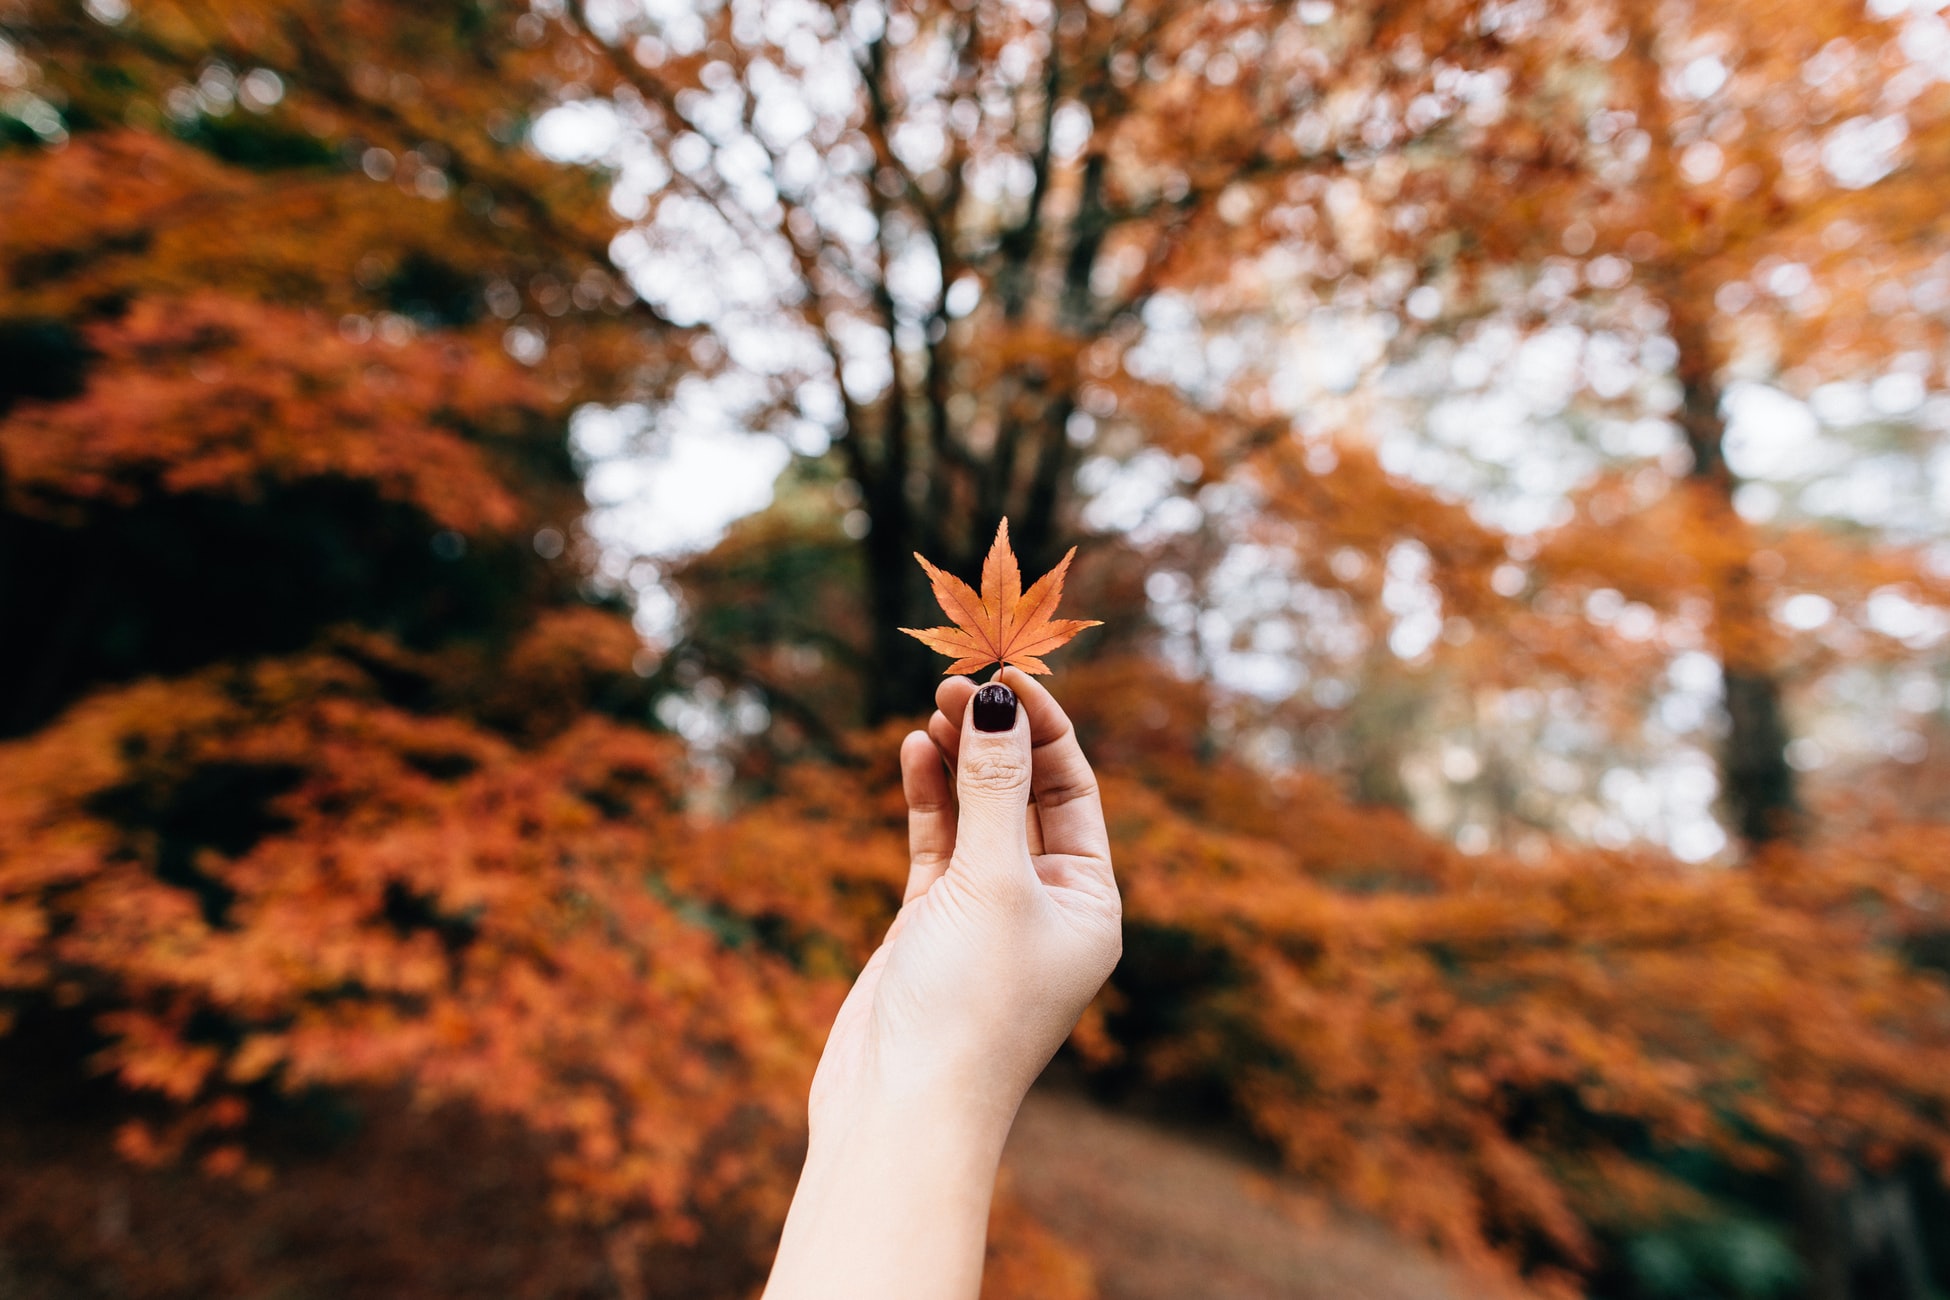 Tải hình nền lá mùa thu đẹp cho iPhone chất lượng 4K